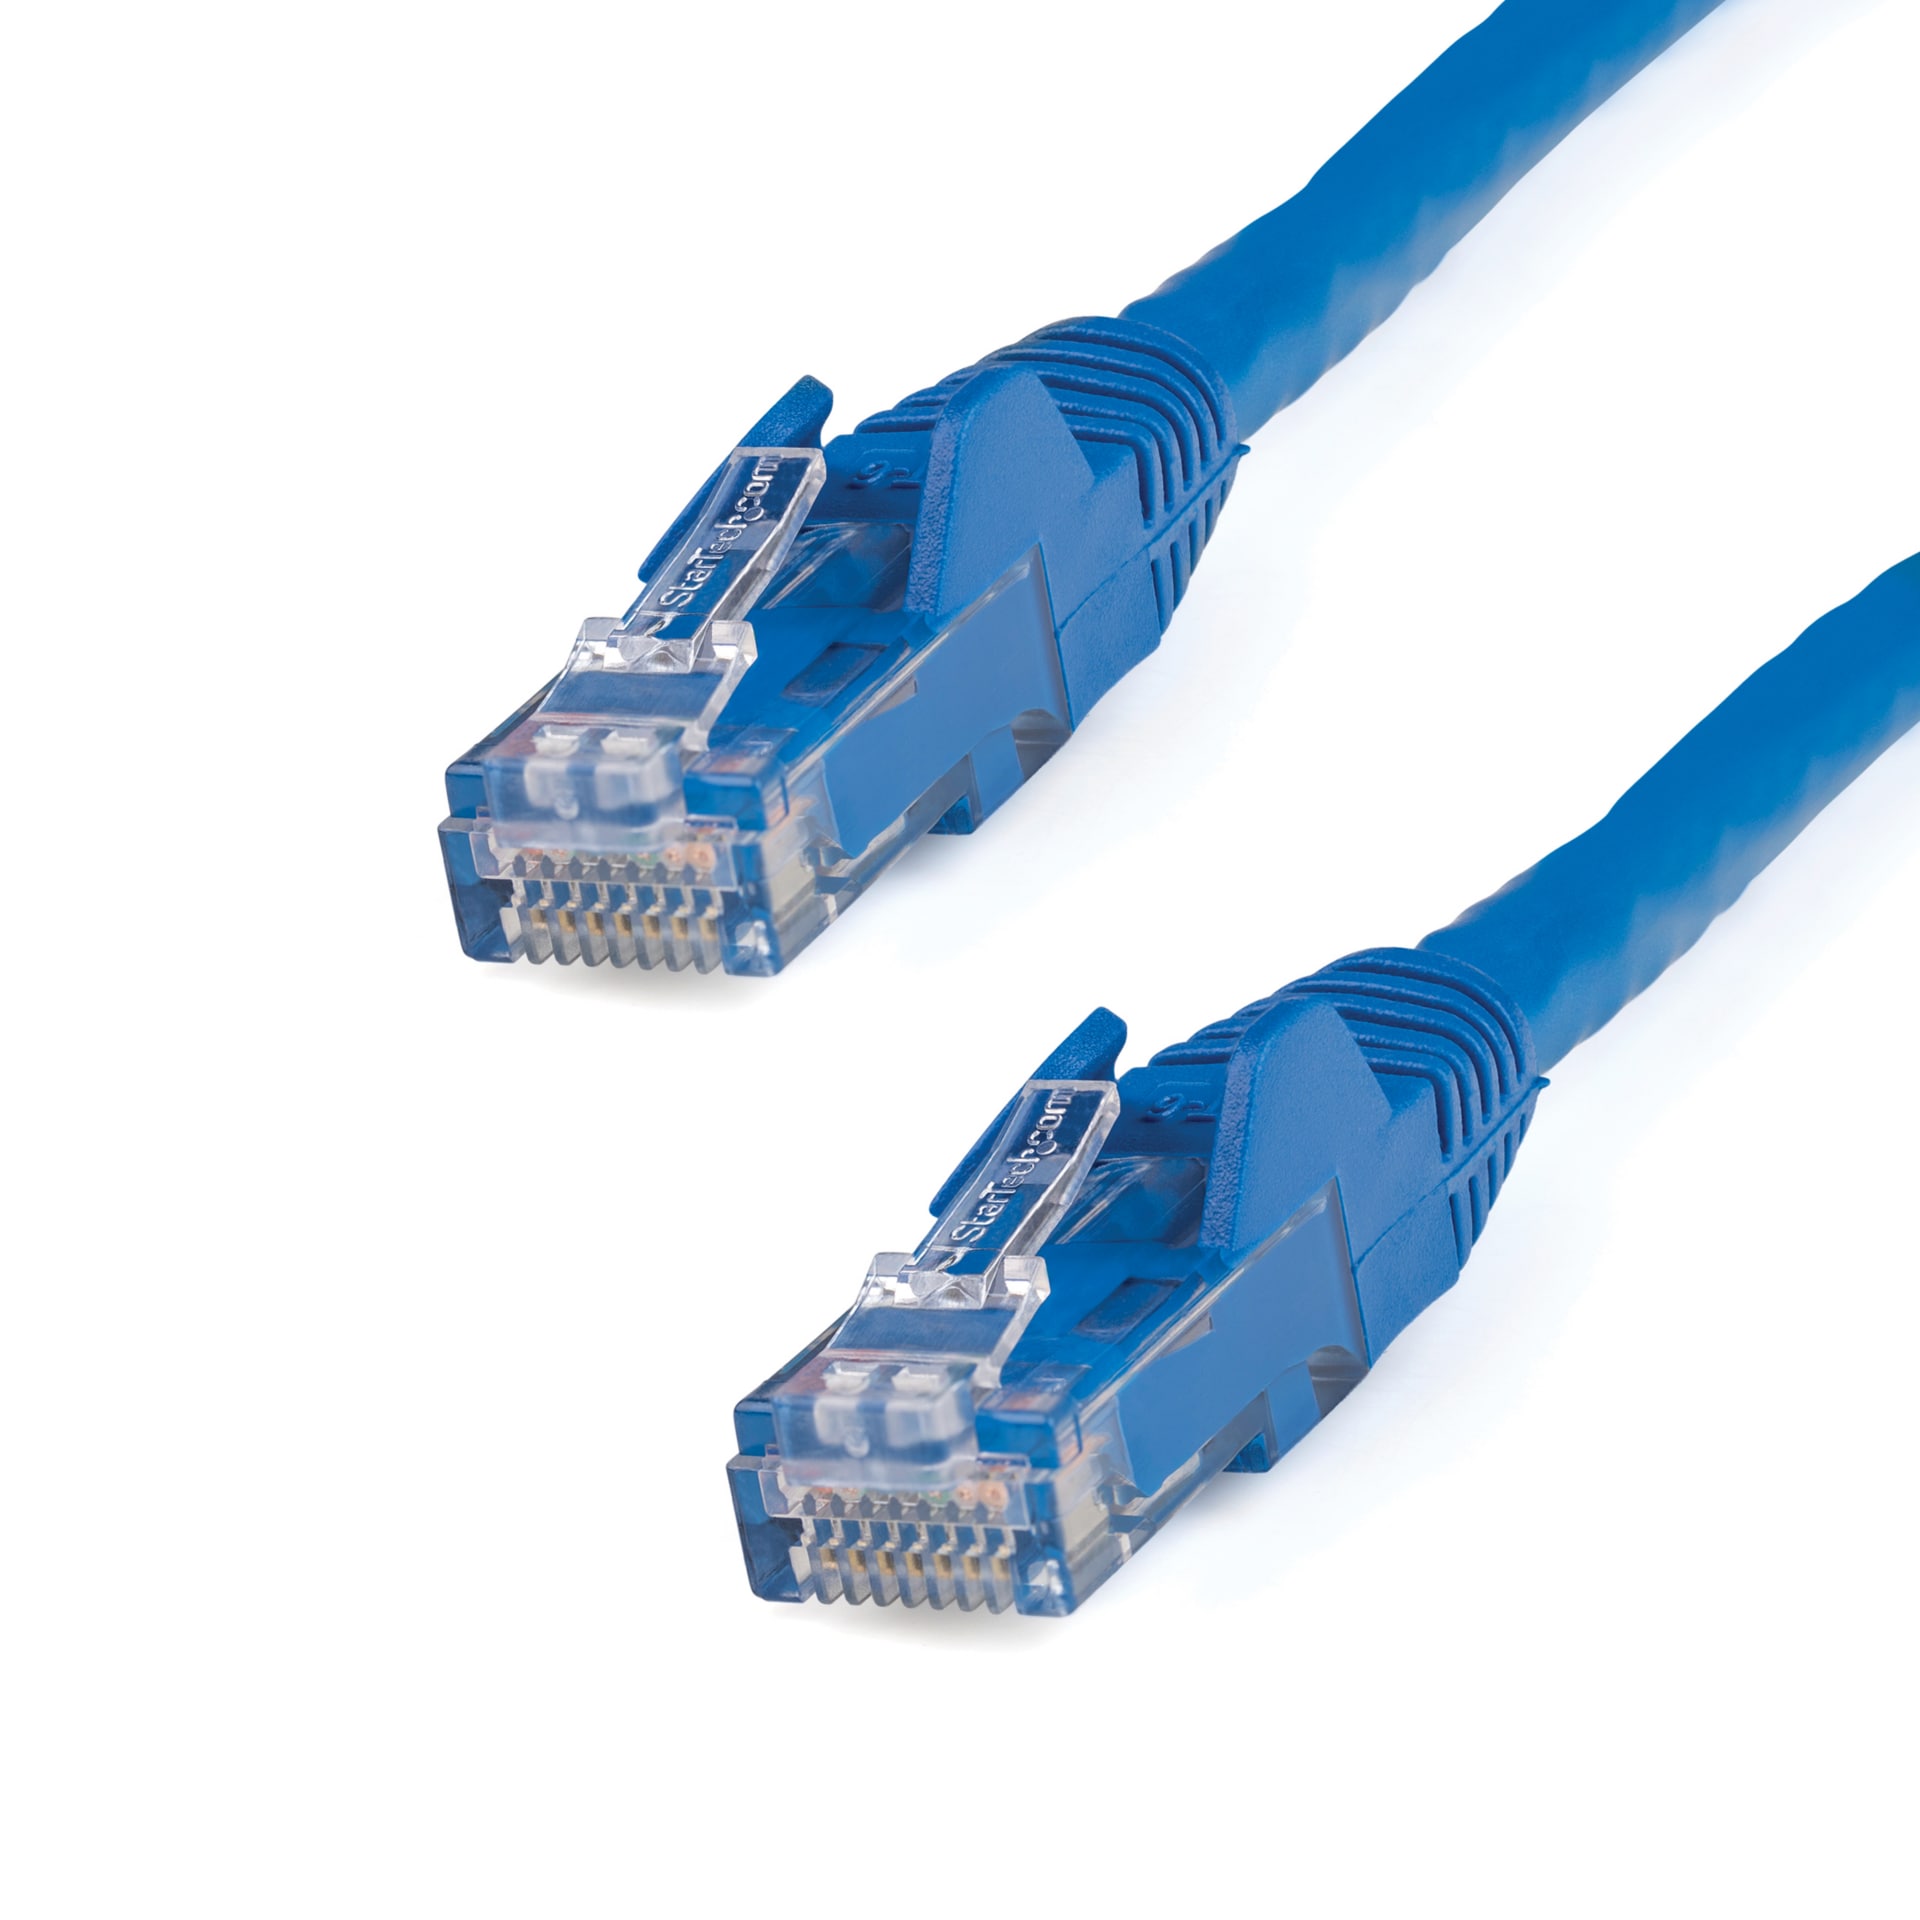 Cat 6 RJ45-RJ45 Network Ethernet Cable - 10m